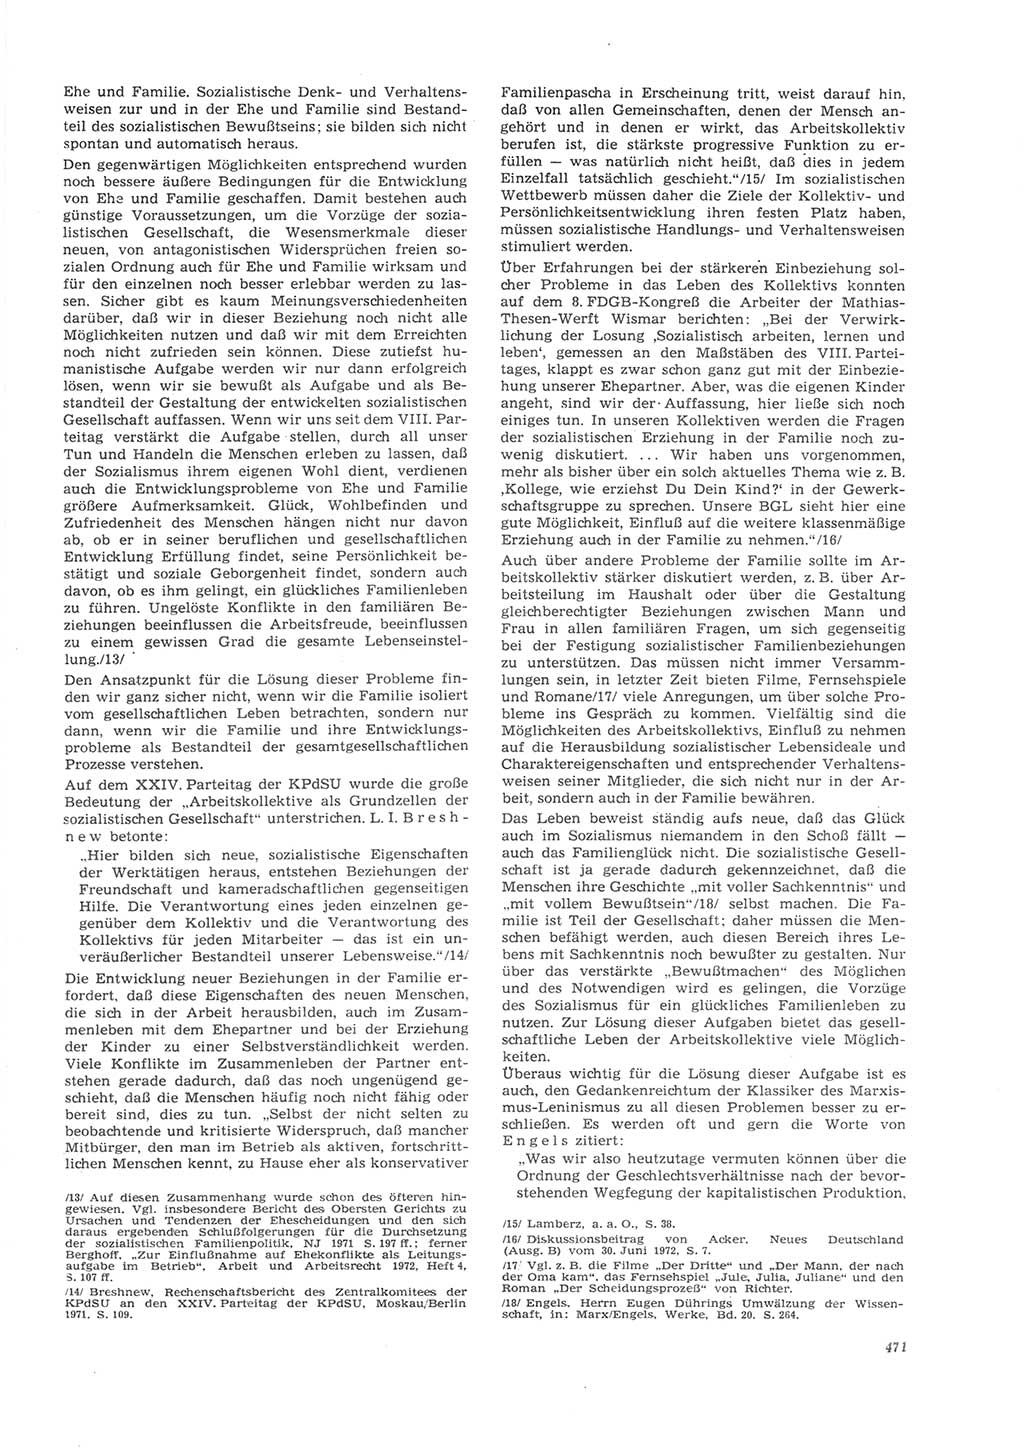 Neue Justiz (NJ), Zeitschrift für Recht und Rechtswissenschaft [Deutsche Demokratische Republik (DDR)], 26. Jahrgang 1972, Seite 471 (NJ DDR 1972, S. 471)